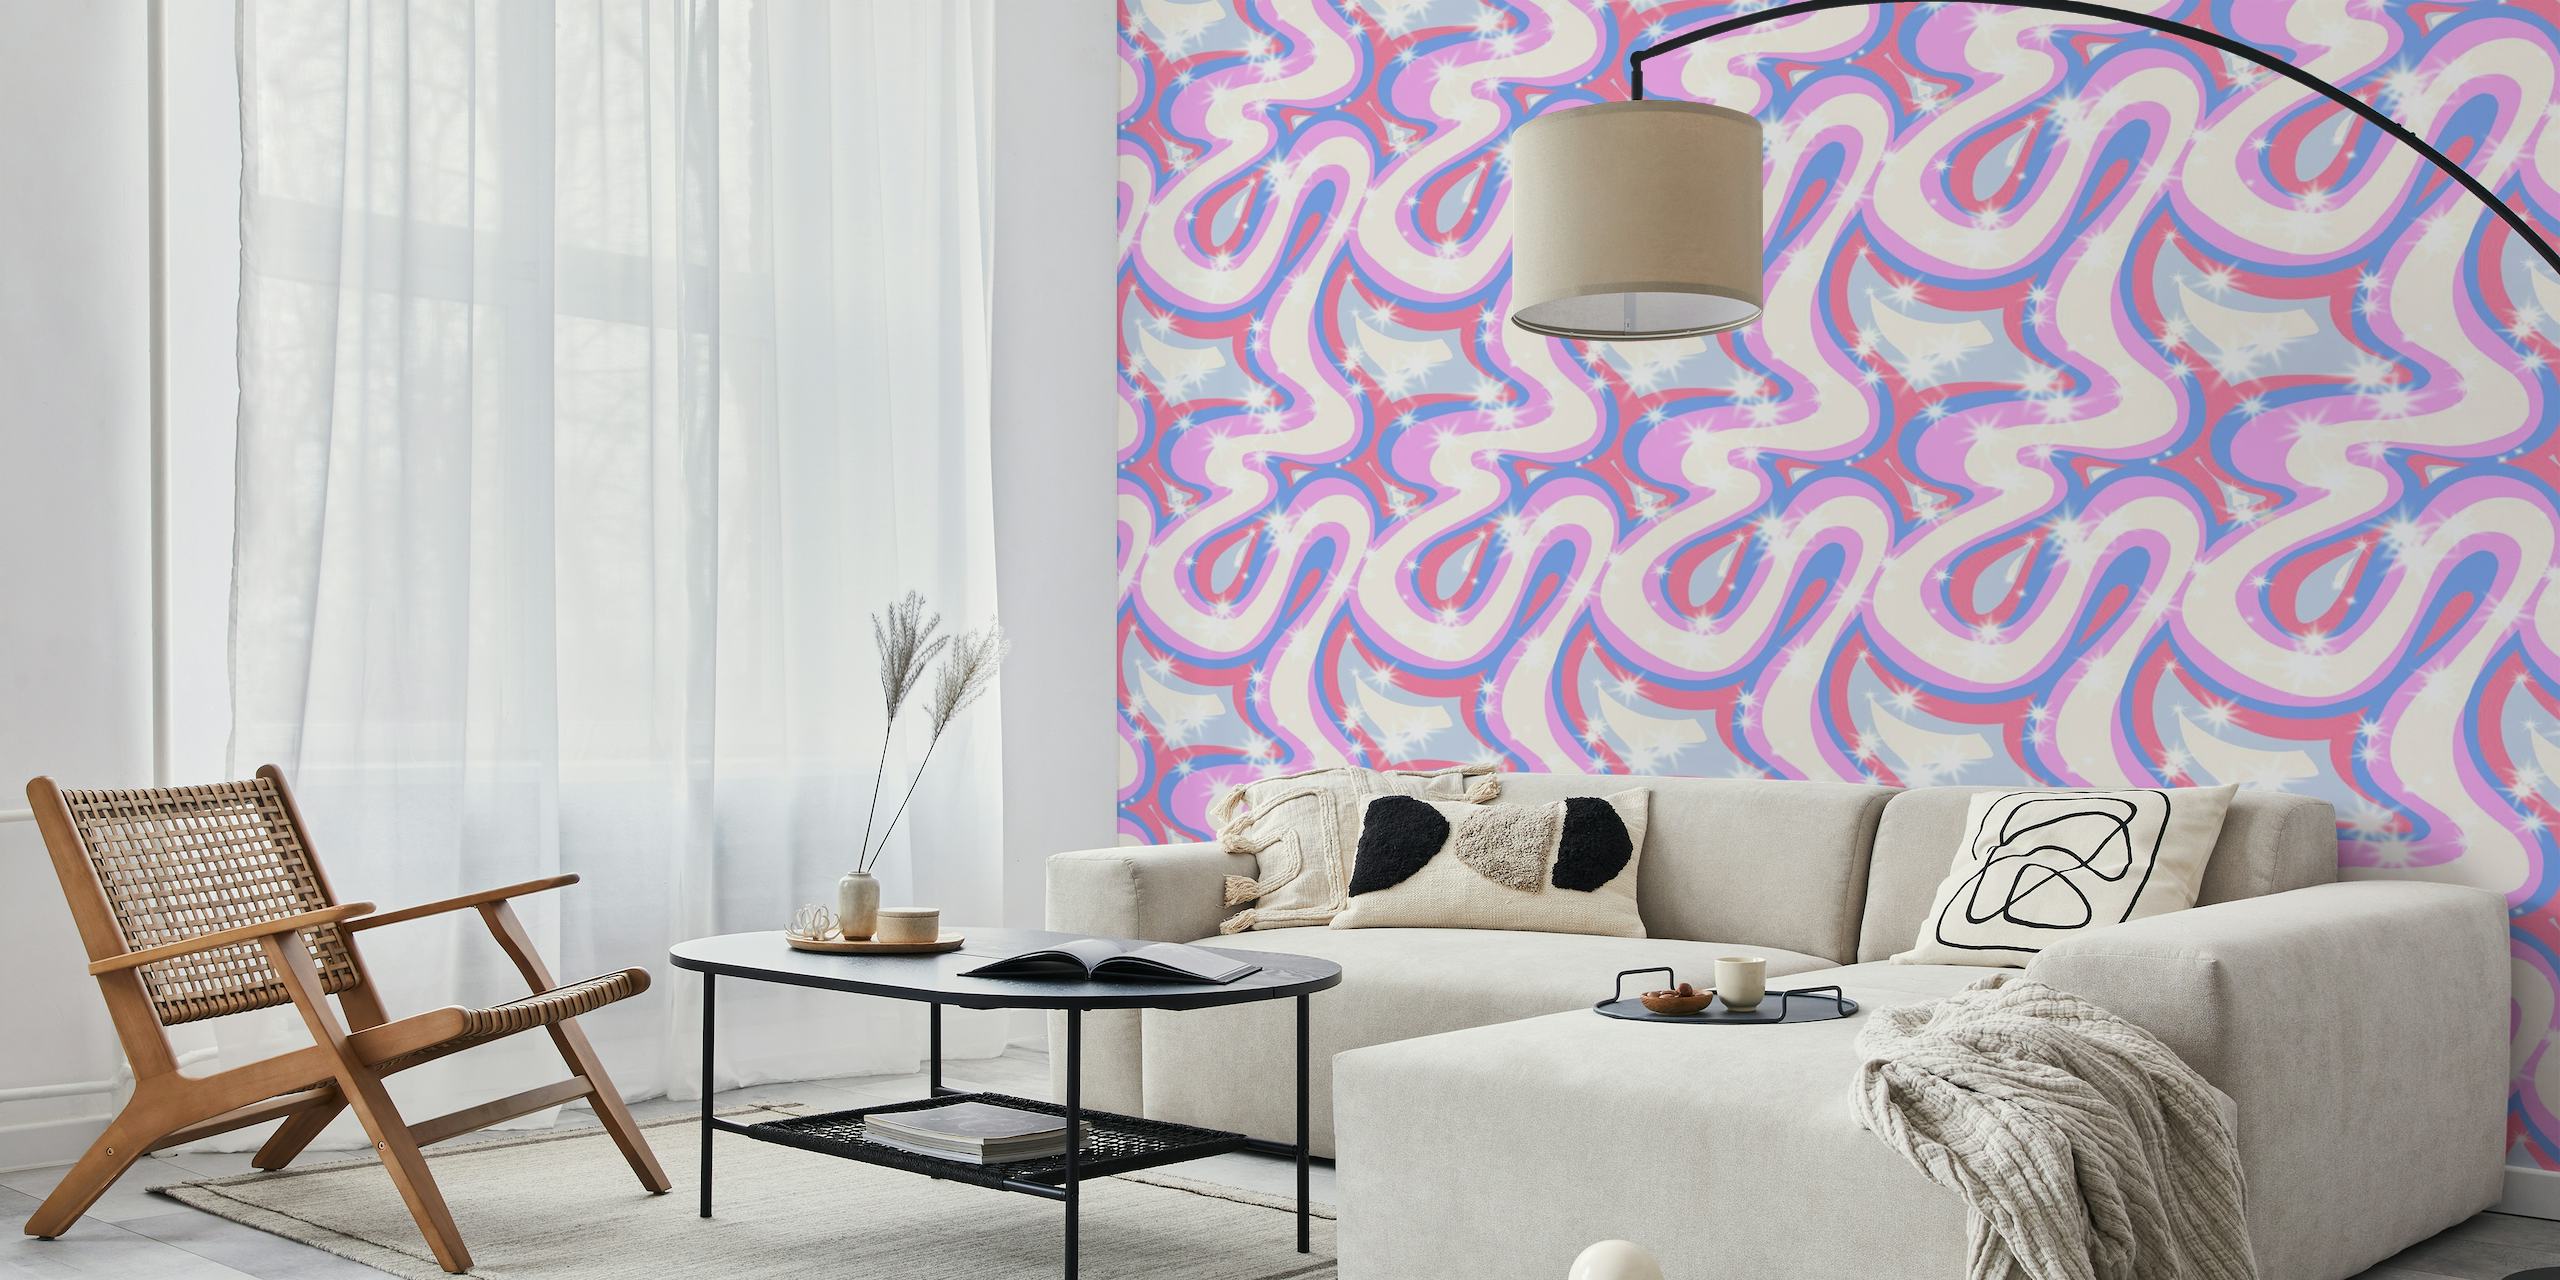 Groovy retro swirls purple wallpaper